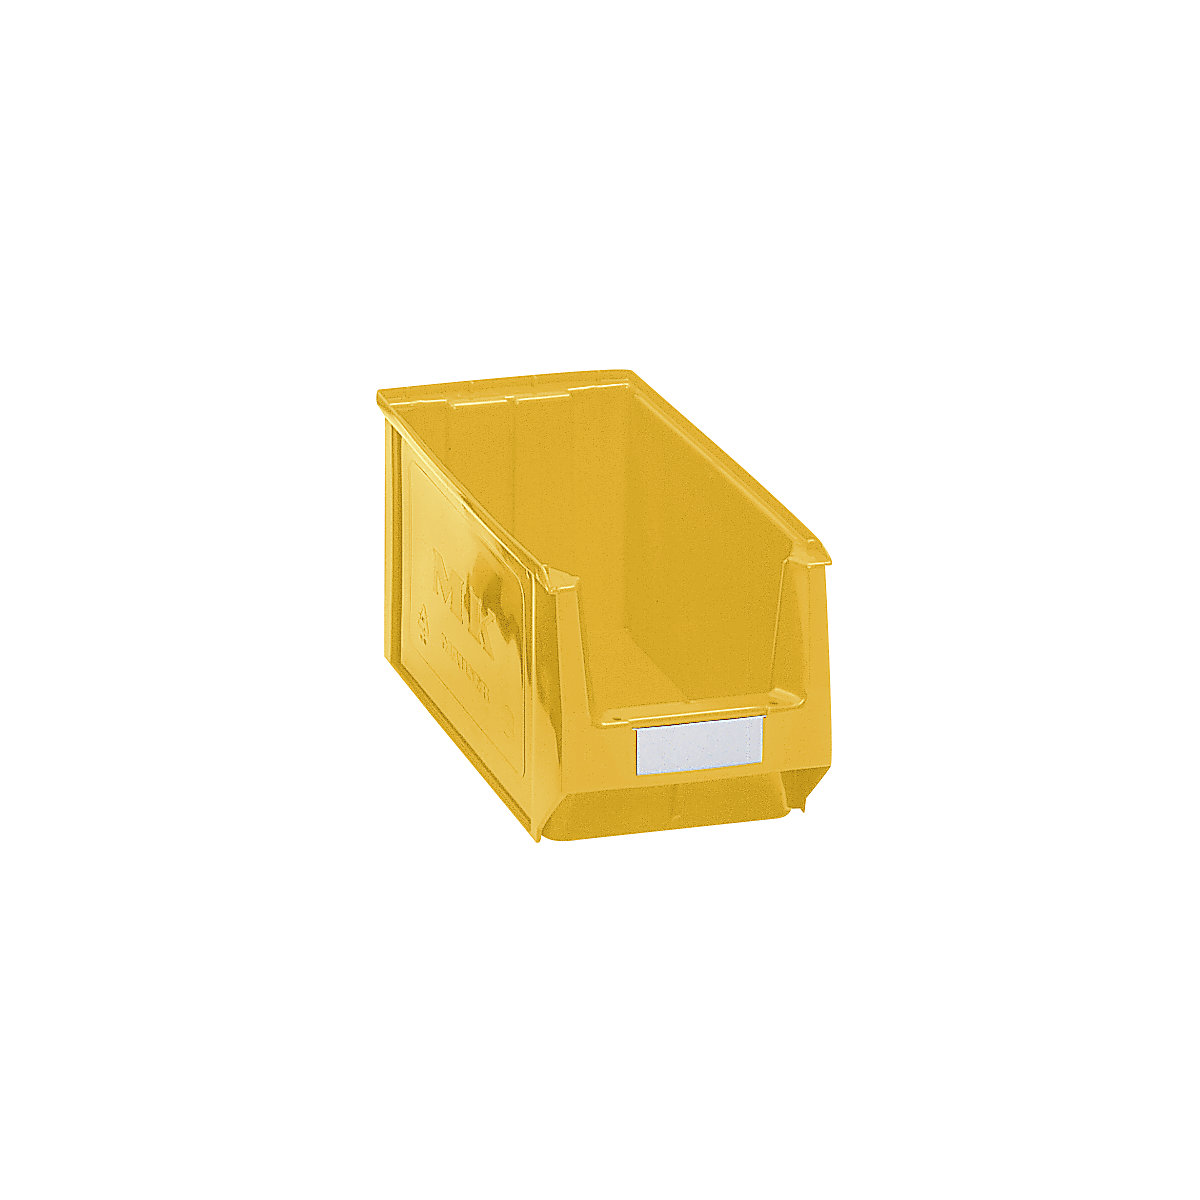 Sichtlagerkasten aus Polyethylen mauser, LxBxH 350 x 210 x 200 mm, gelb, VE 10 Stk-7